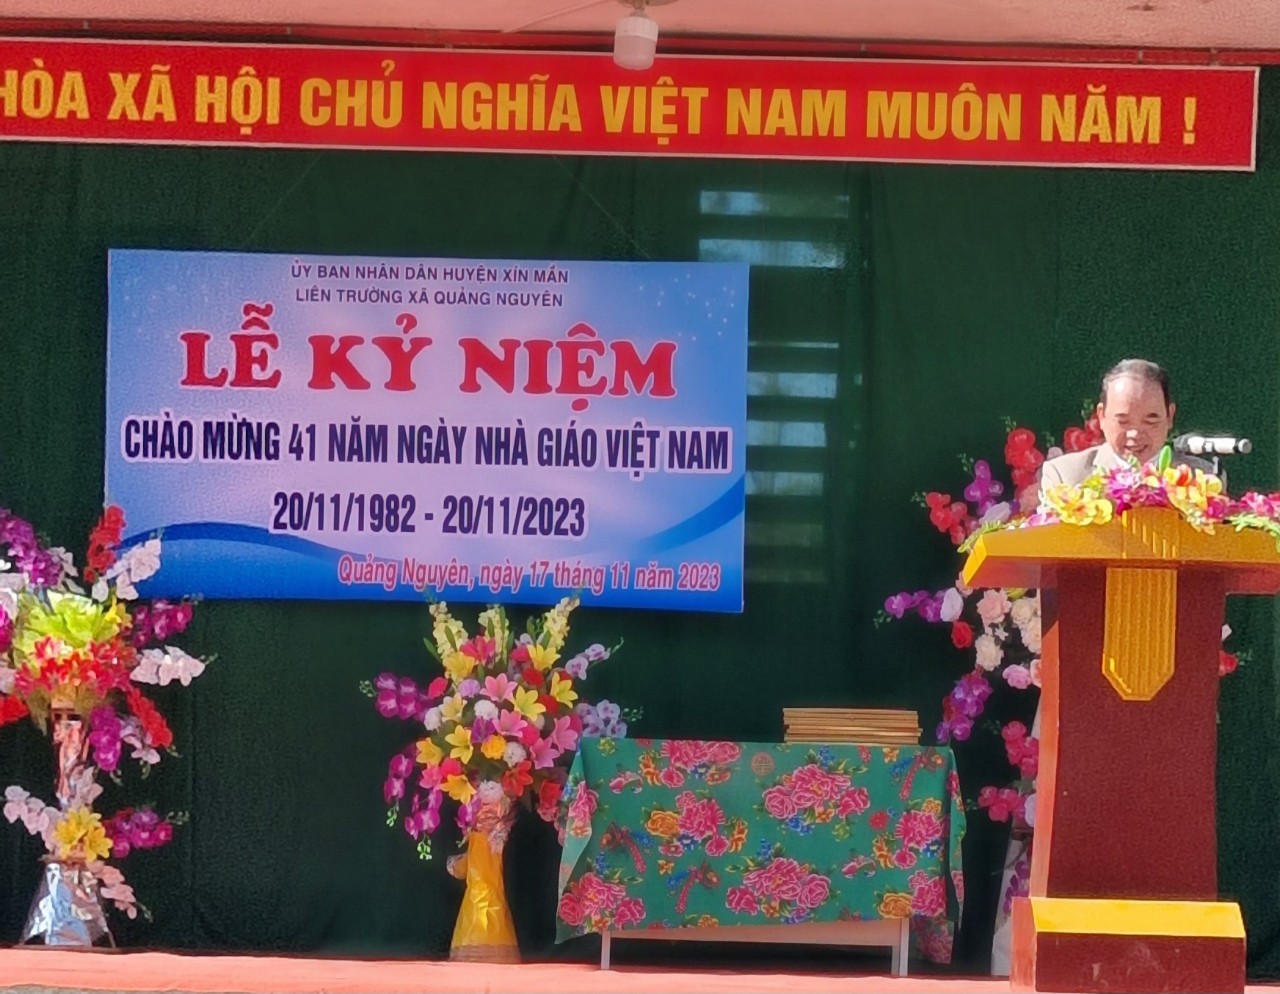 Liên trường xã Quảng Nguyên long trọng tổ chức Lễ kỷ niệm 41 năm ngày Nhà giáo Việt Nam